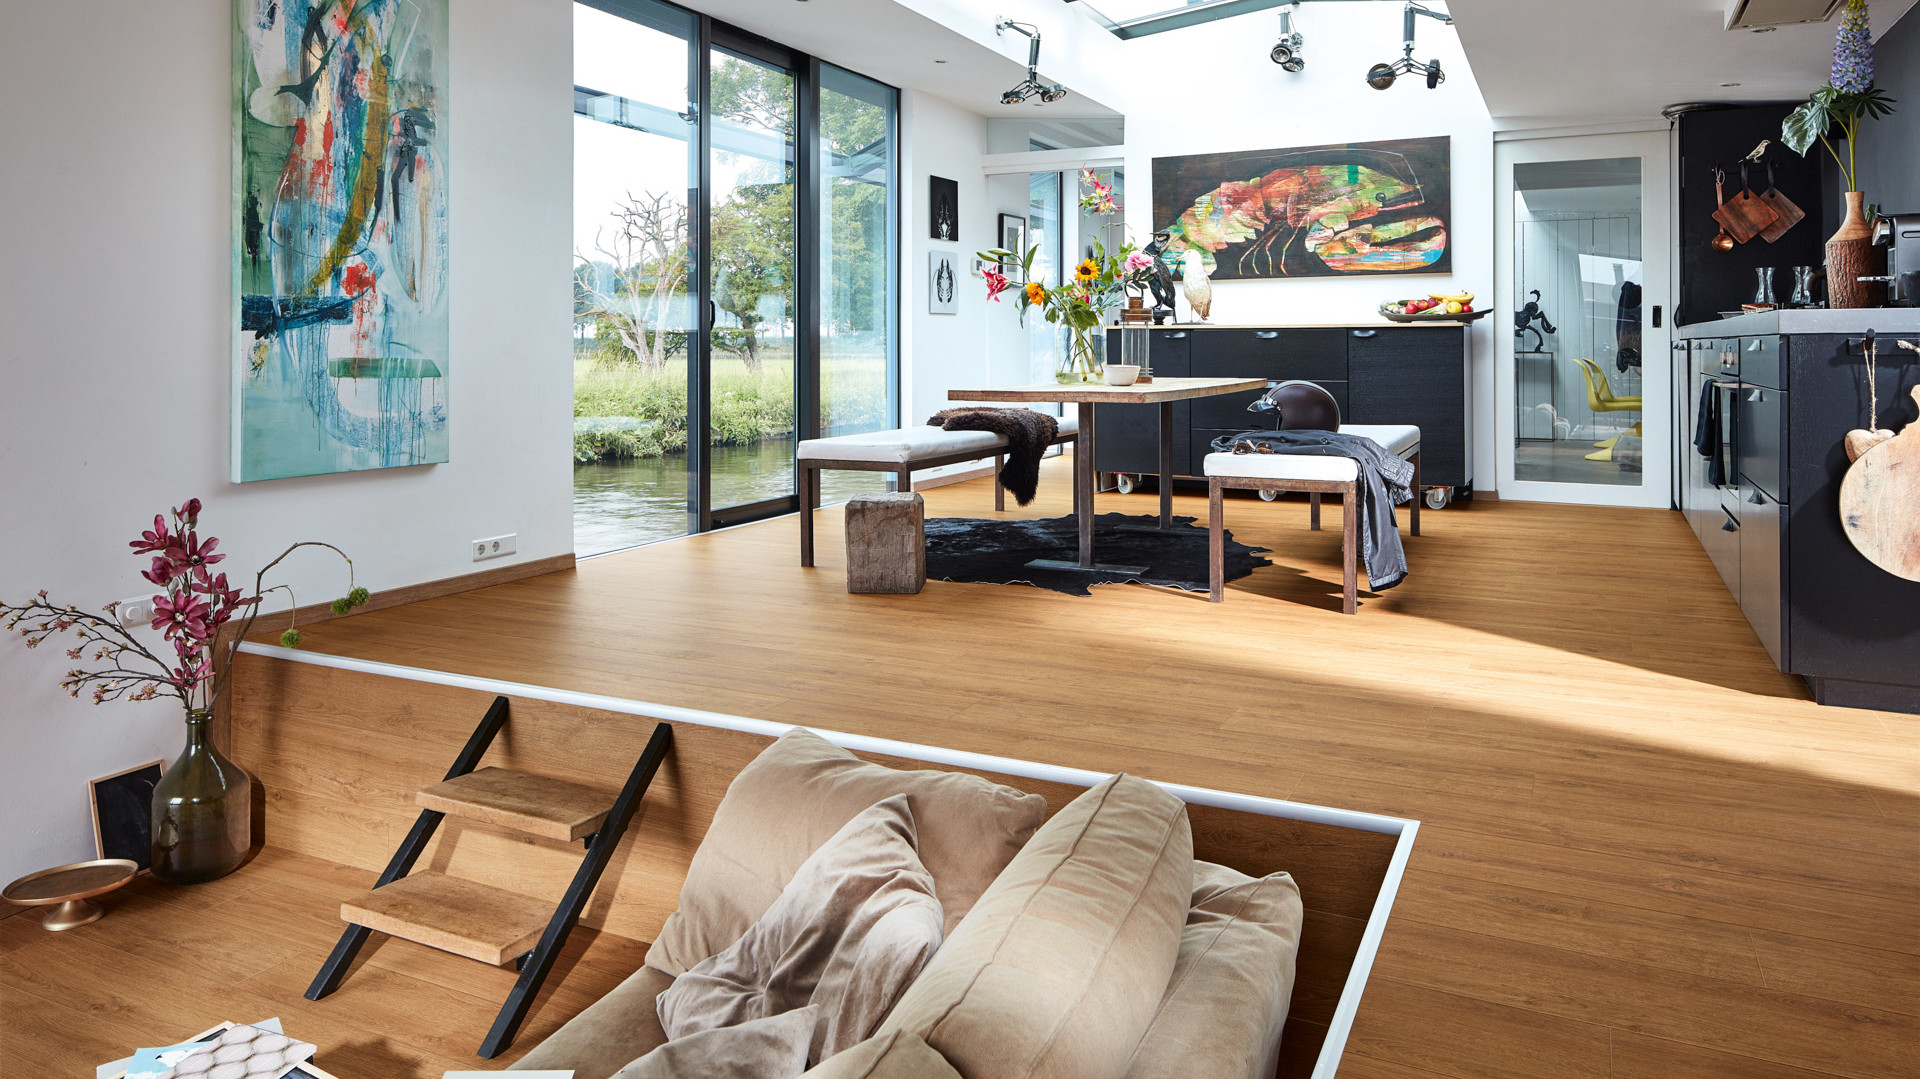 Designboden in authentischer Holzoptik in einem offenen Wohnraum mit Küche